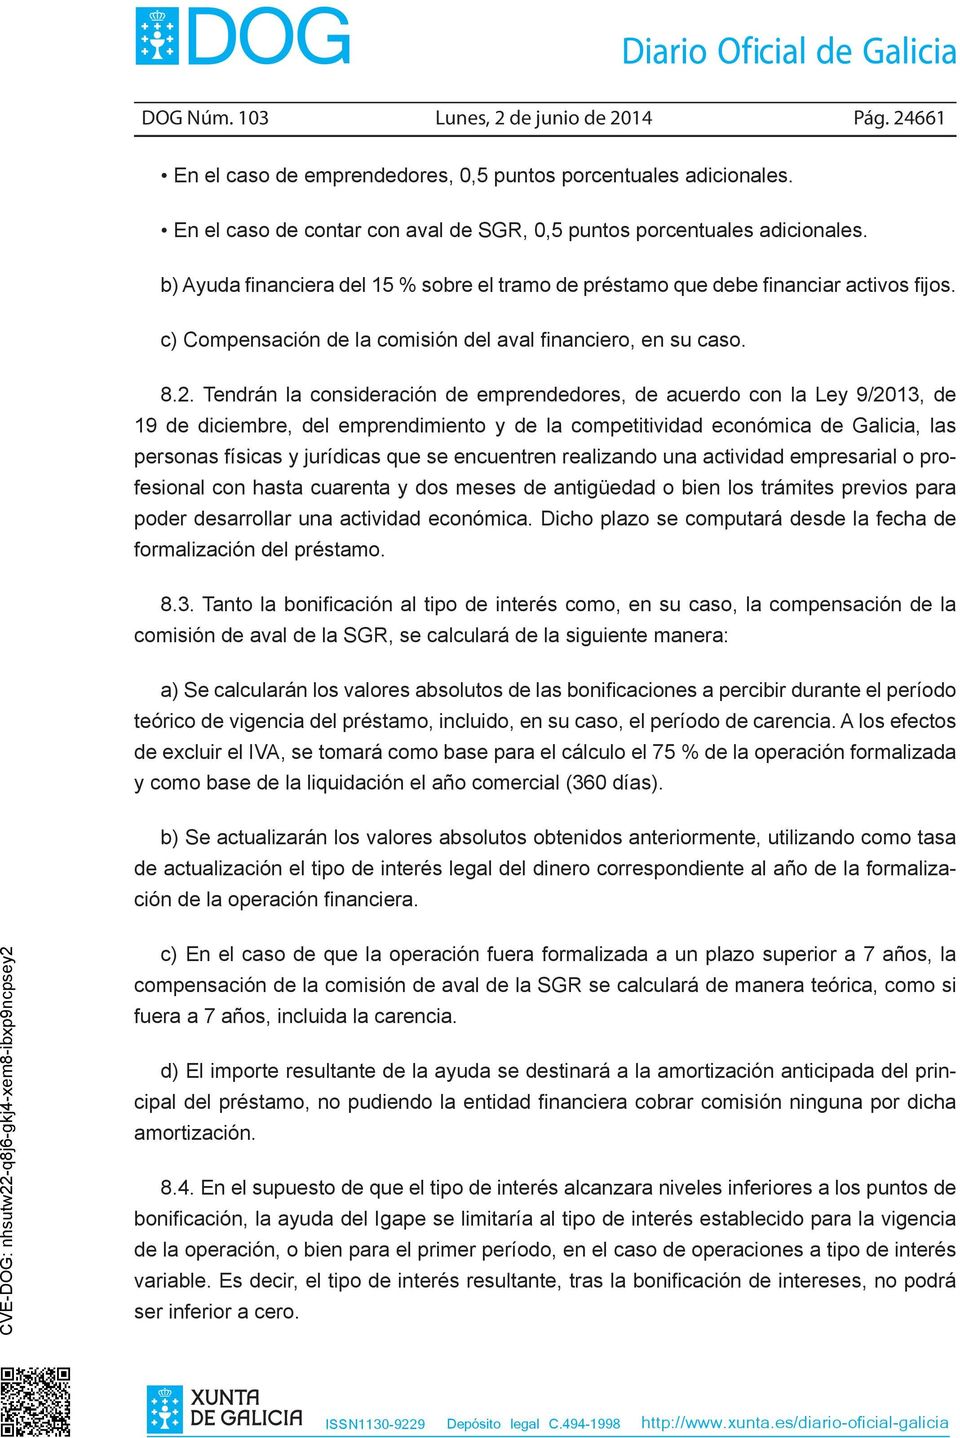 Tendrán la consideración de emprendedores, de acuerdo con la Ley 9/2013, de 19 de diciembre, del emprendimiento y de la competitividad económica de Galicia, las personas físicas y jurídicas que se